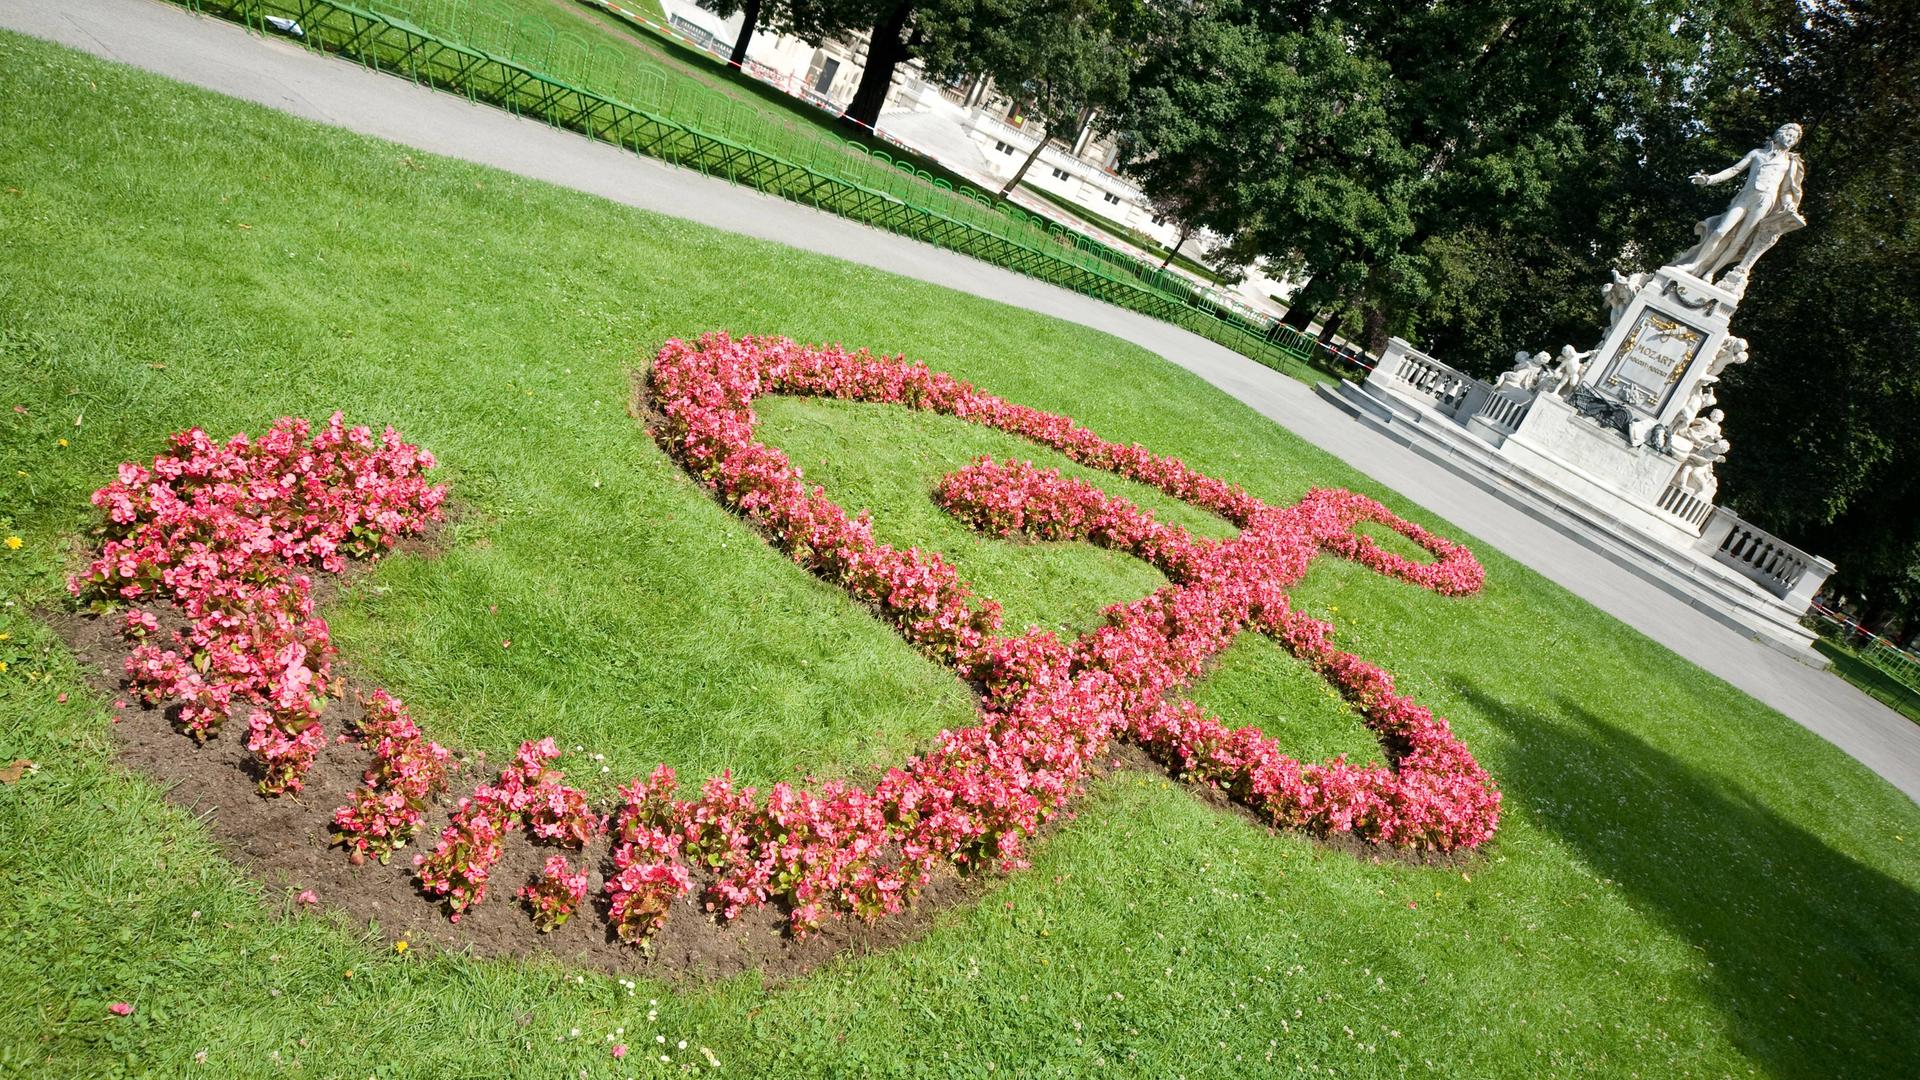 Auf dem Rasen vor dem weißen Mozartdenkmal in Wien sind rosafarbene Blumen angepflanzt, die einen überdimensionalen Notenschlüssel ergeben.